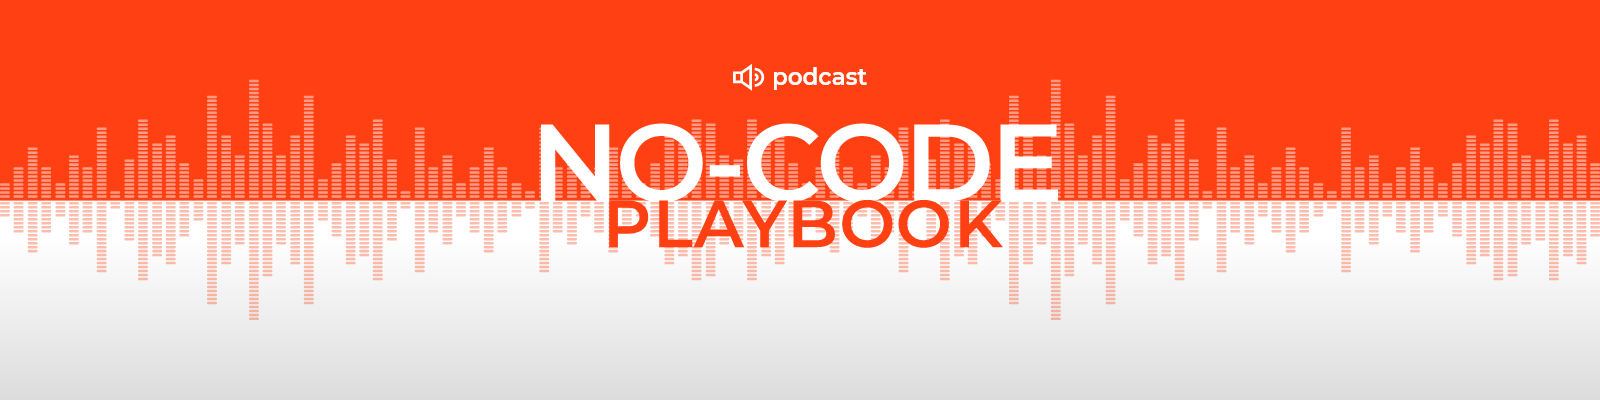 No-Code Playbook by Creatio